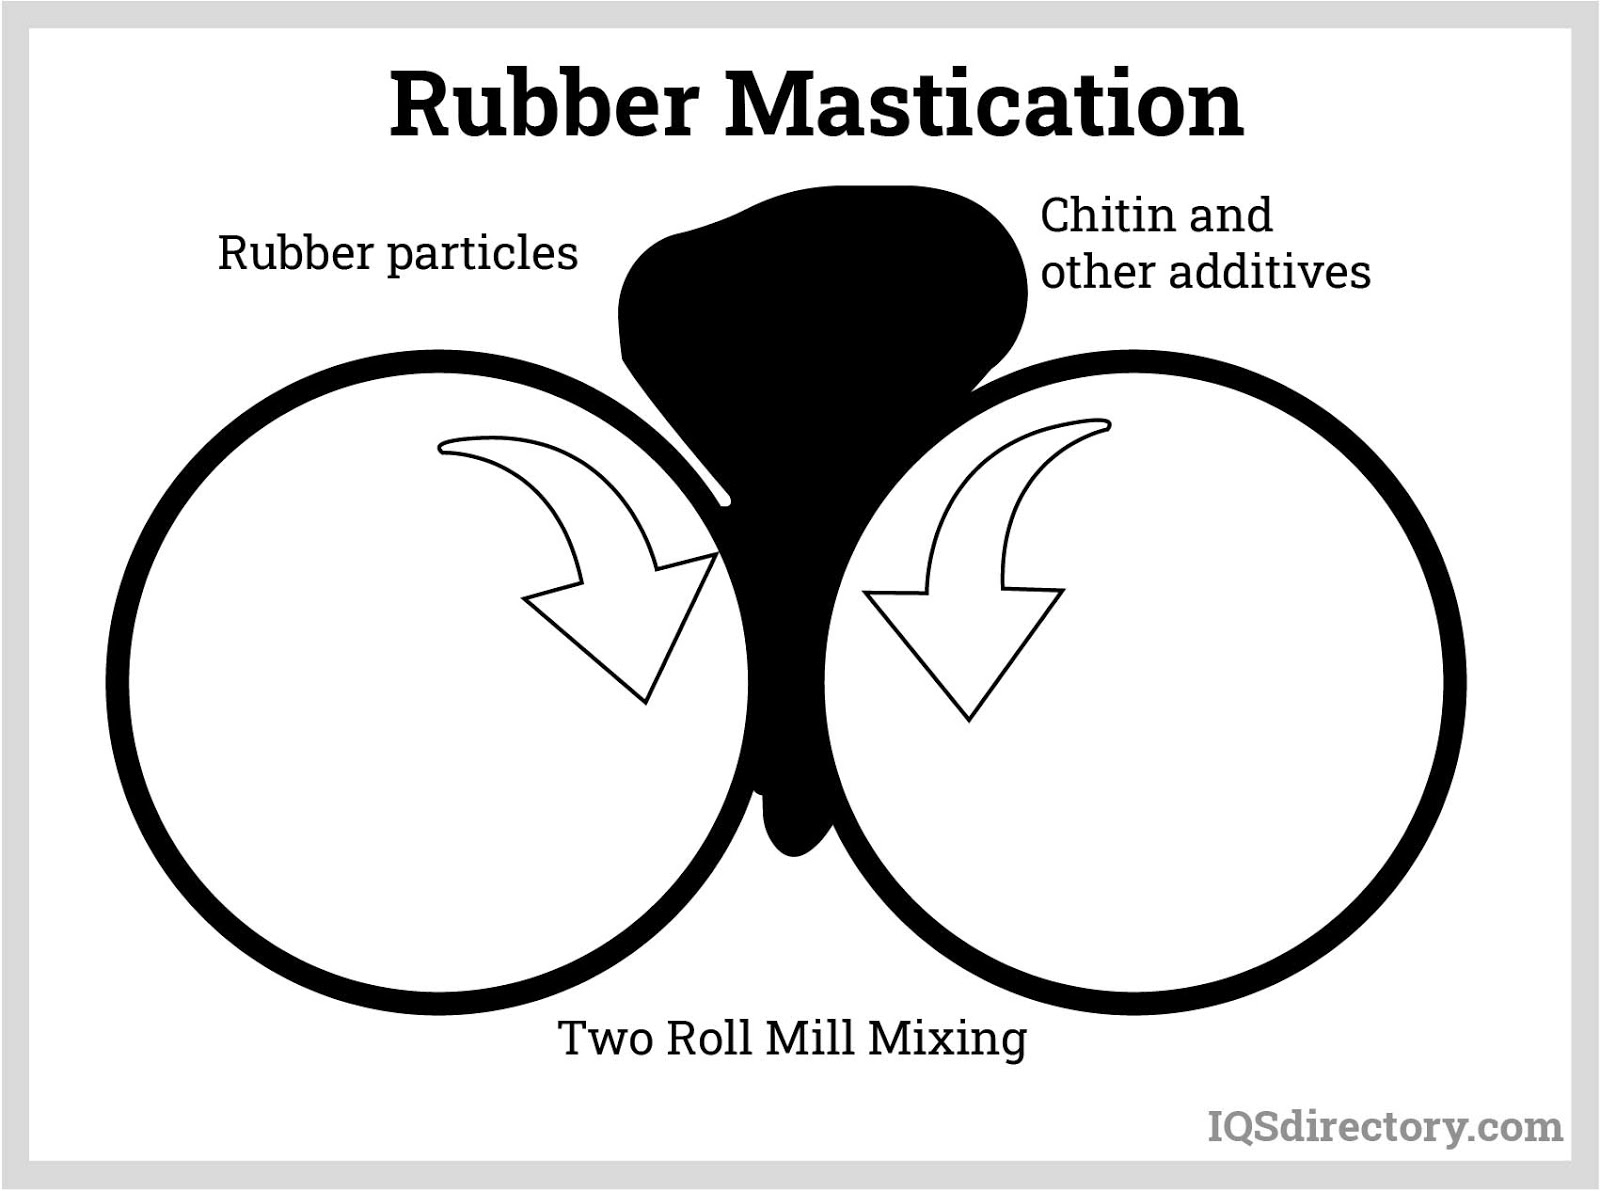 Rubber Mastication